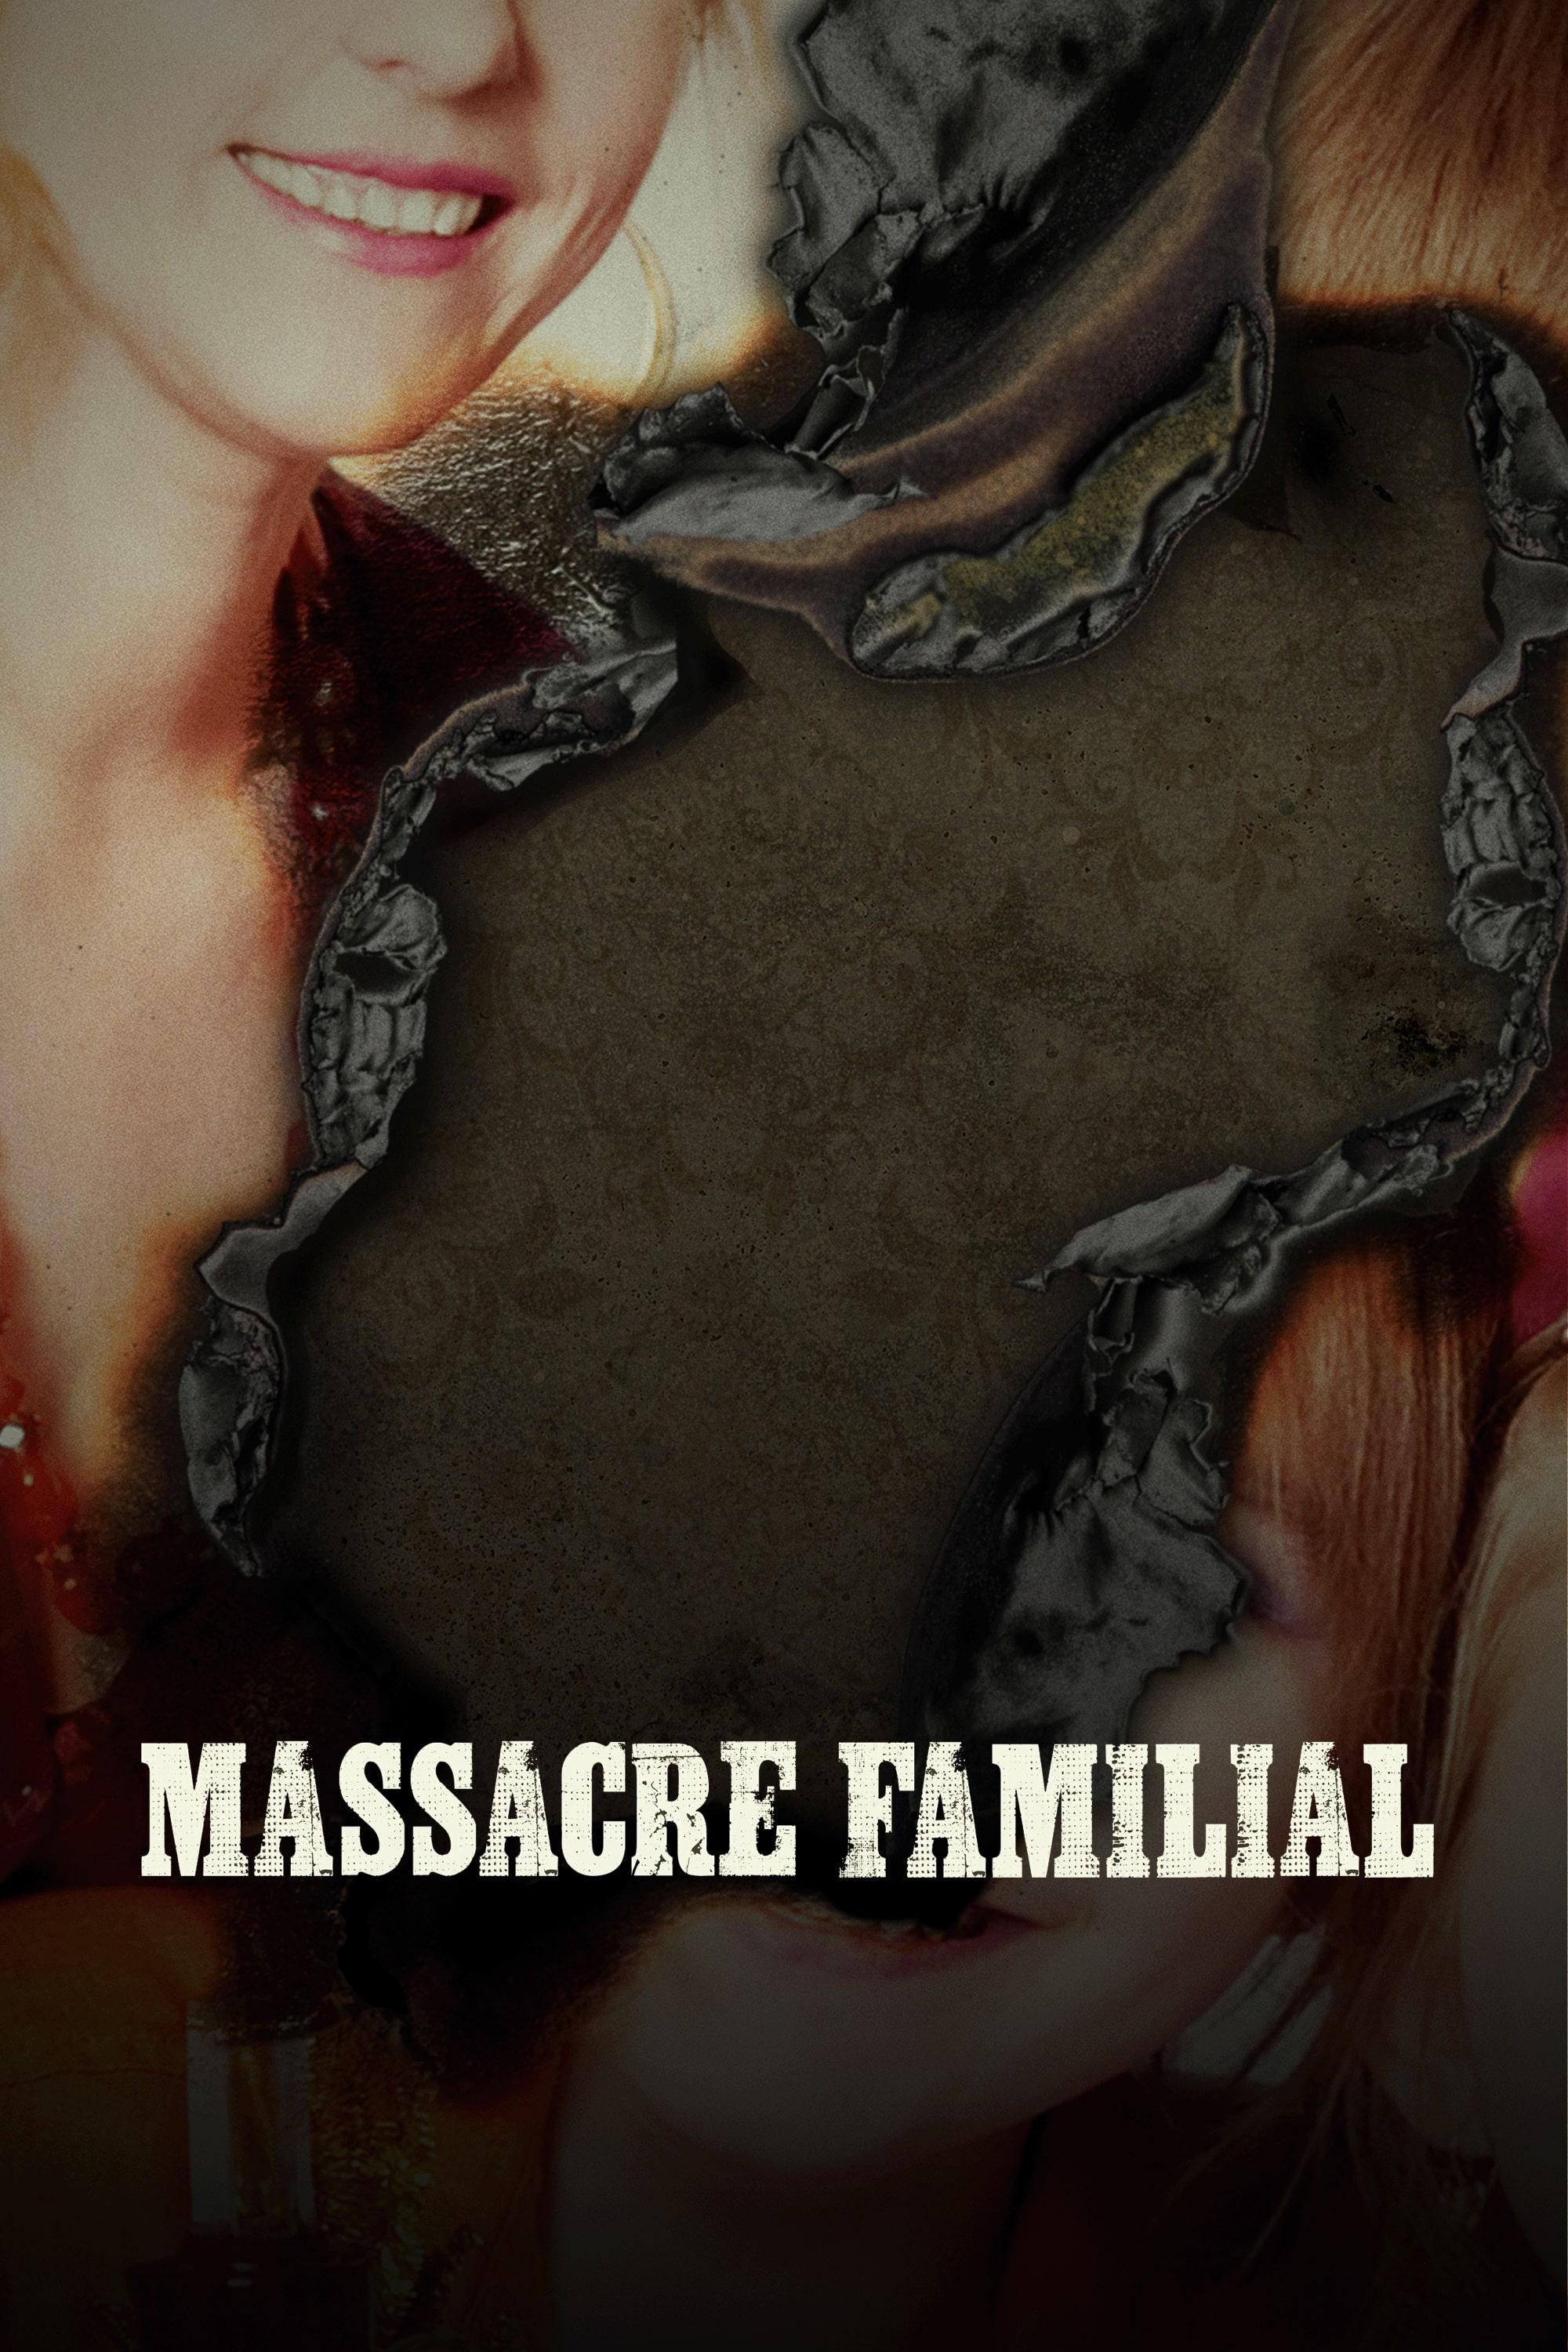 Massacre familial